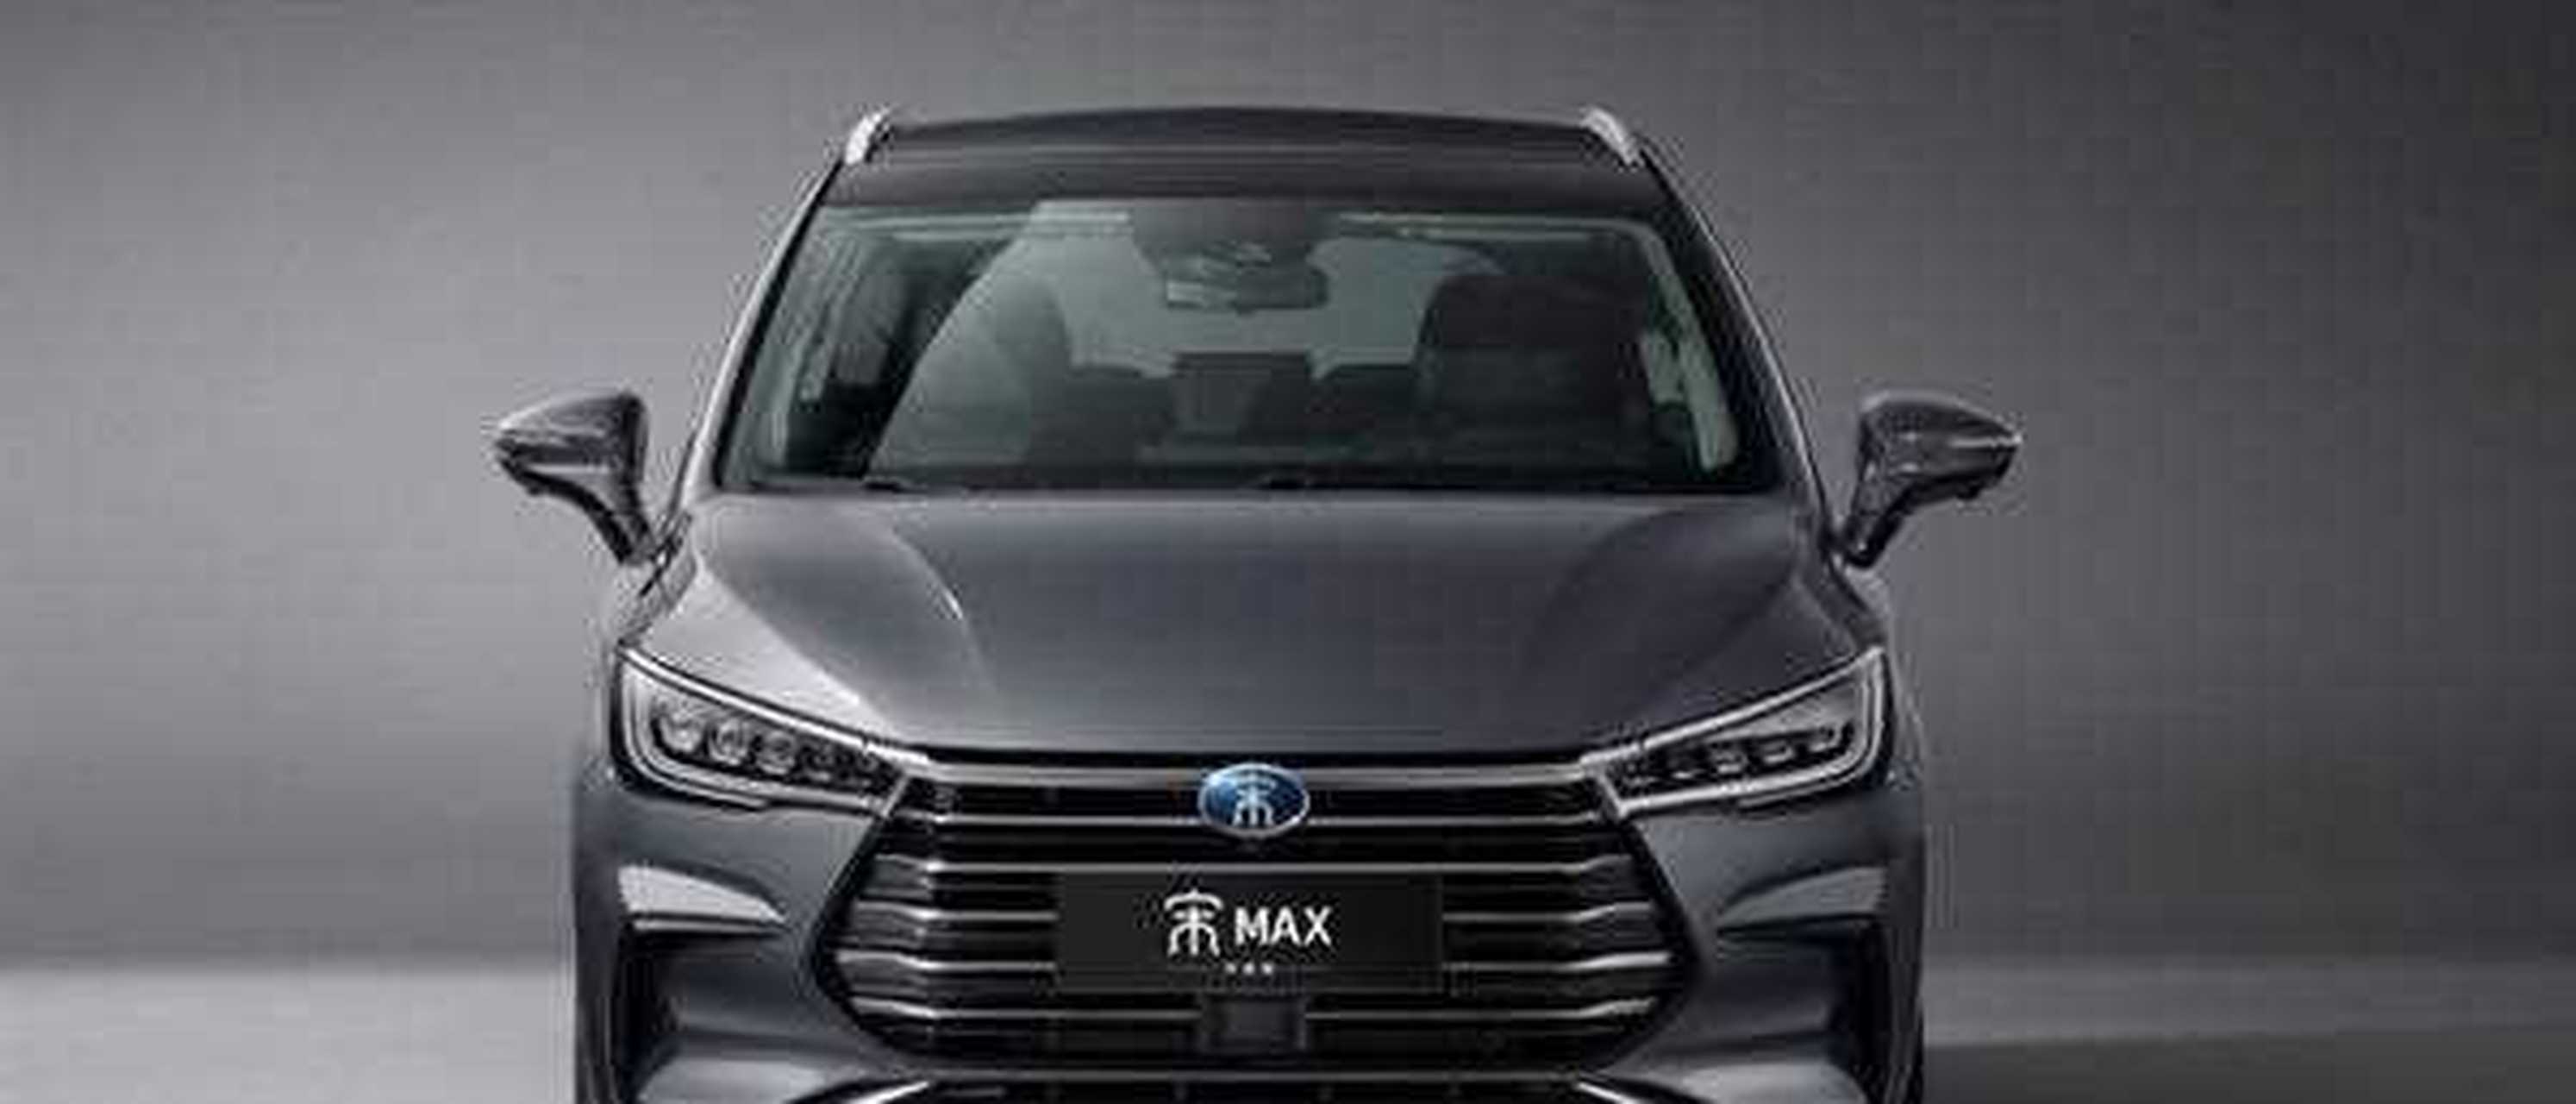 比亚迪官方发布了一组新款宋max车型官图,新车采用了家族最新的